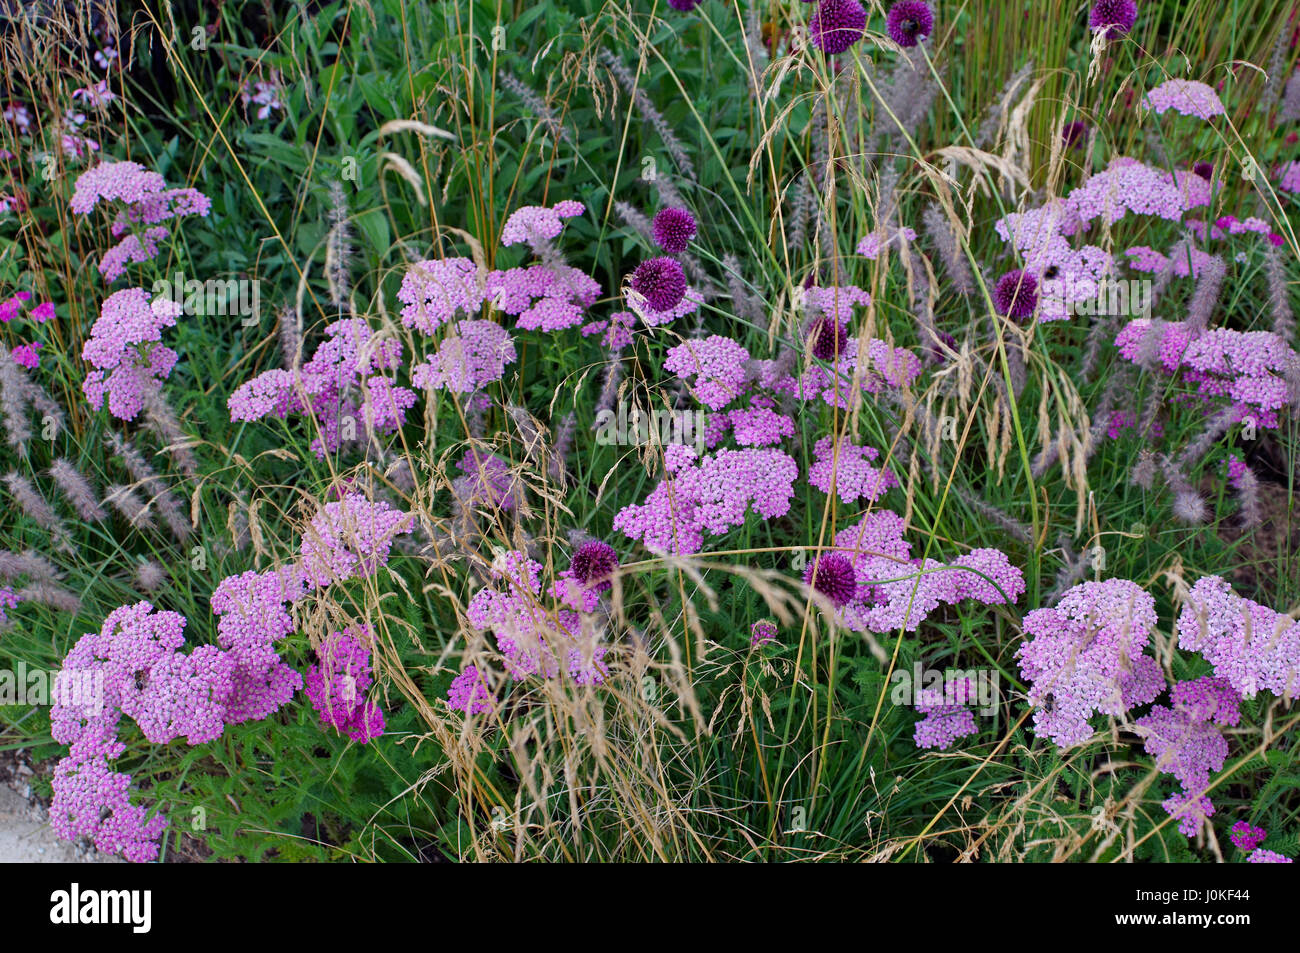 Dettaglio di un confine con Achillea, Allium ed erbe Foto Stock